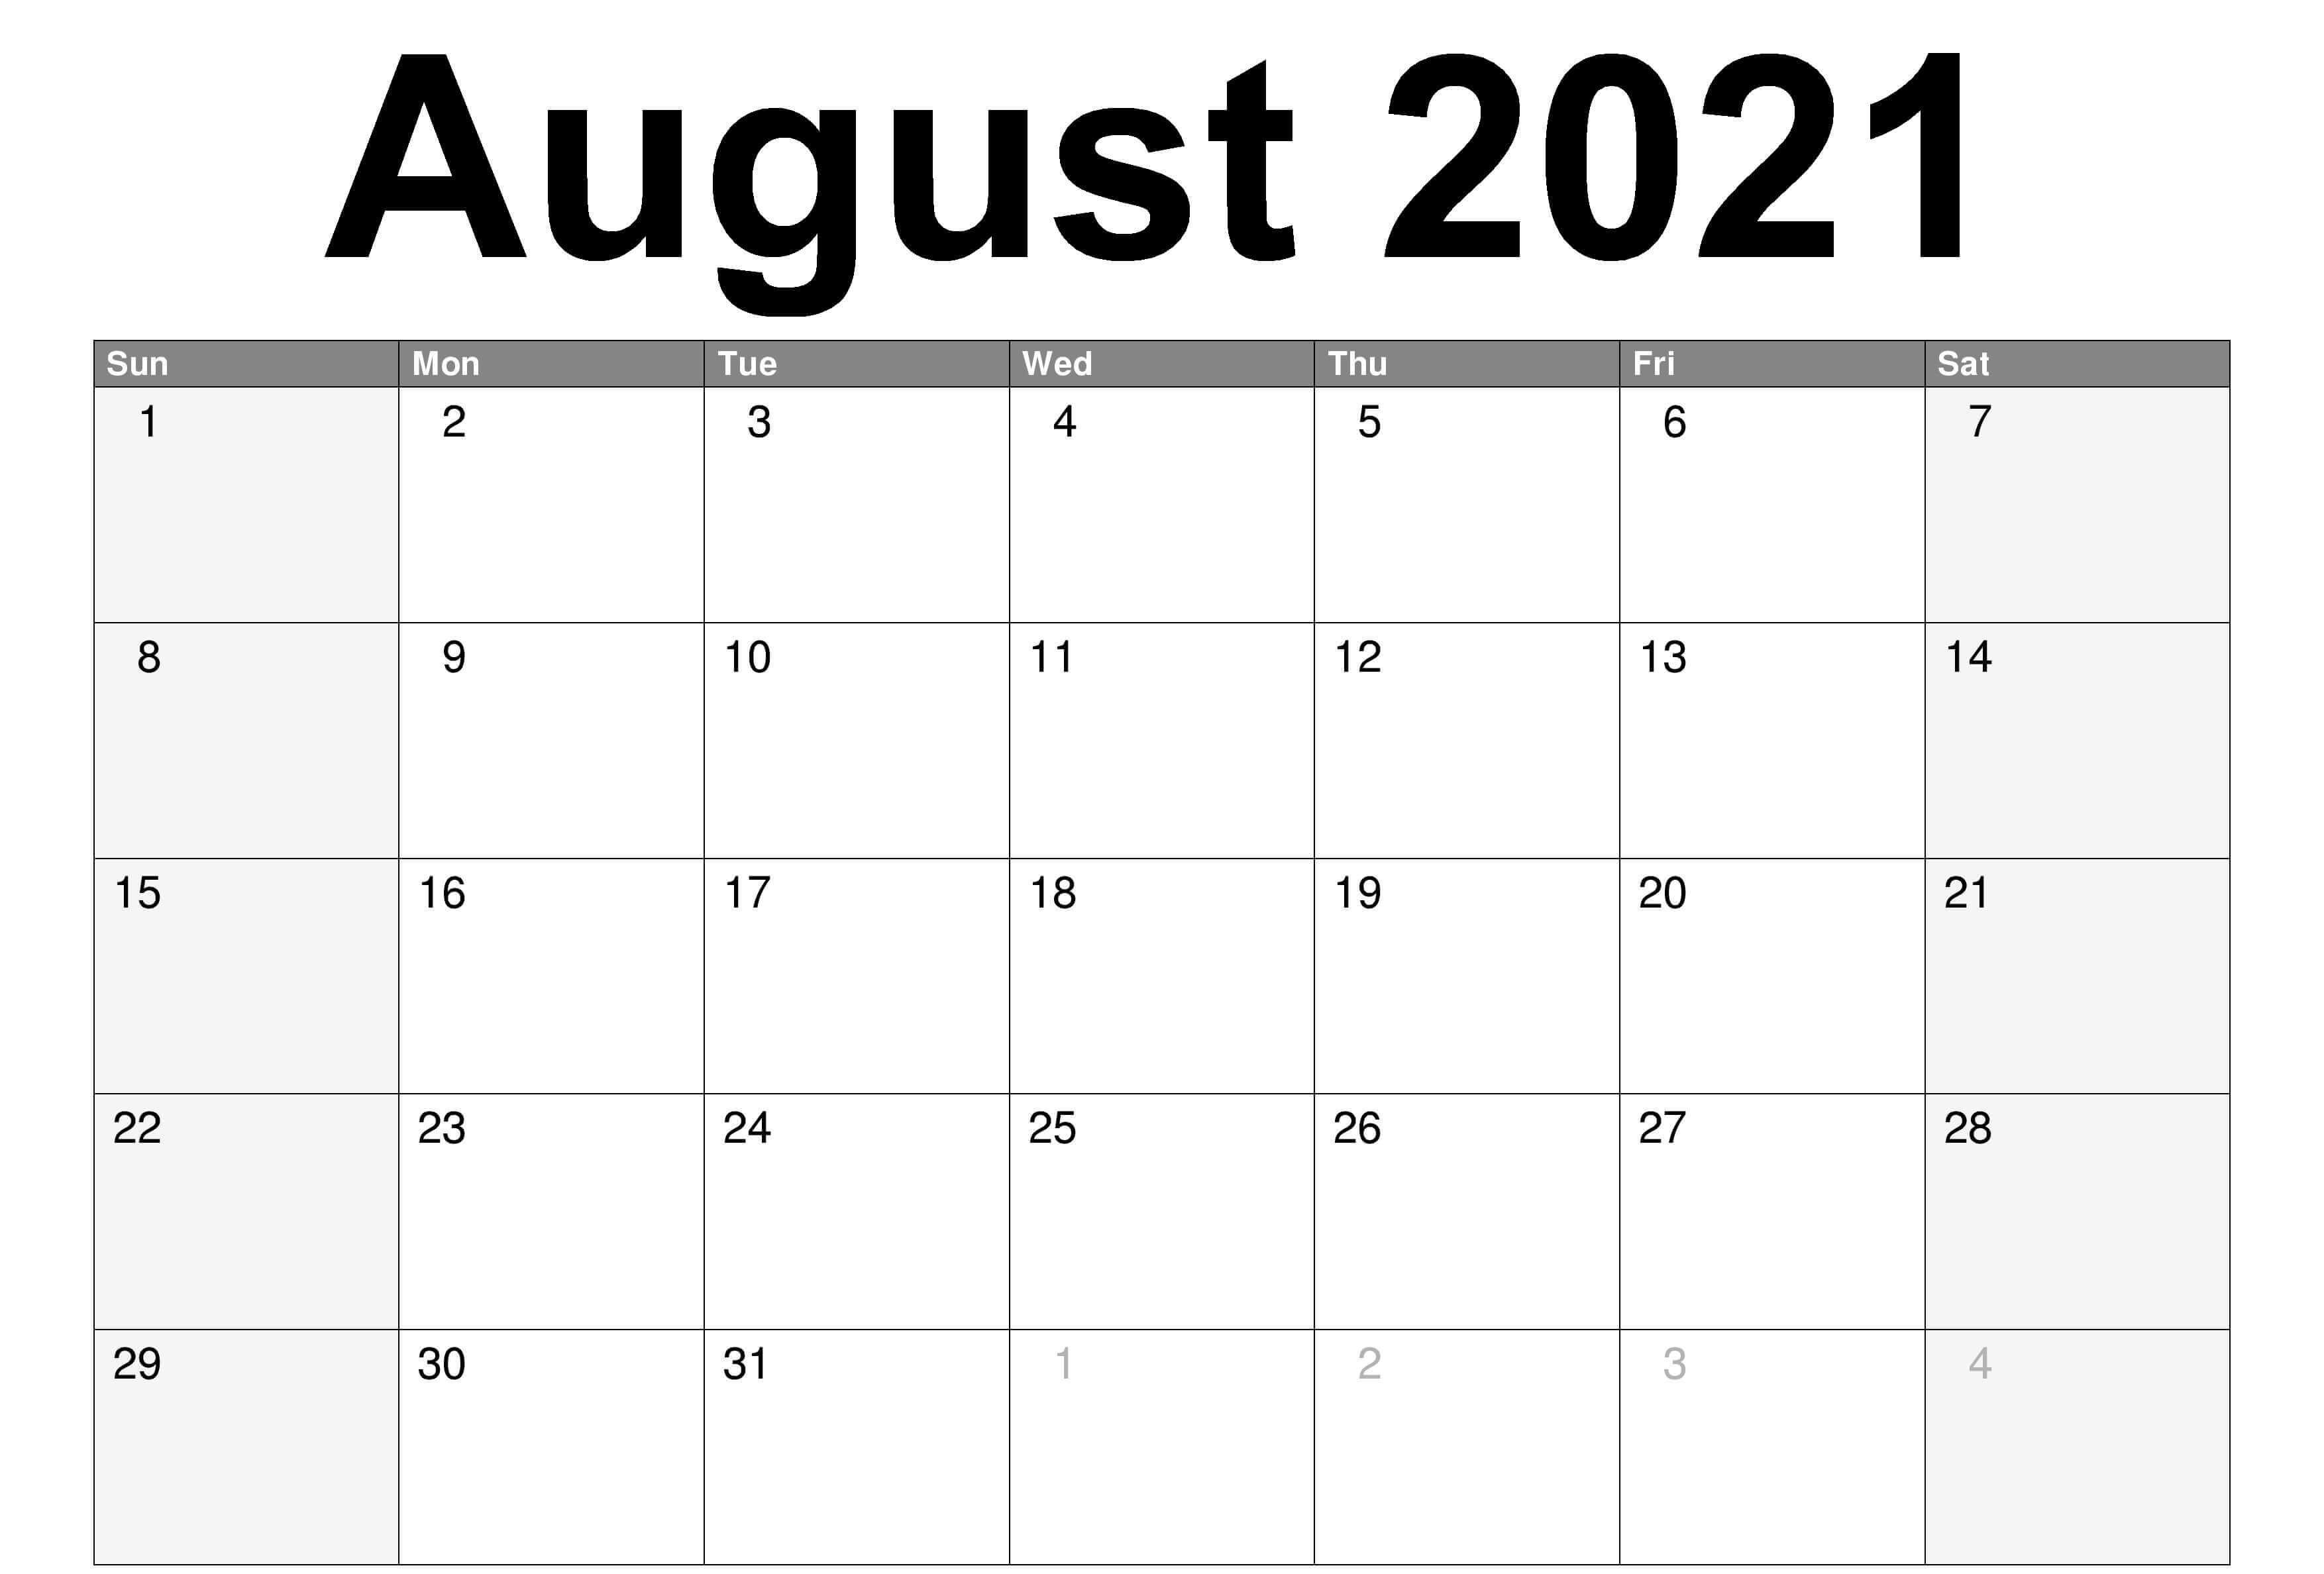 August 2021 Blank Calendar Template